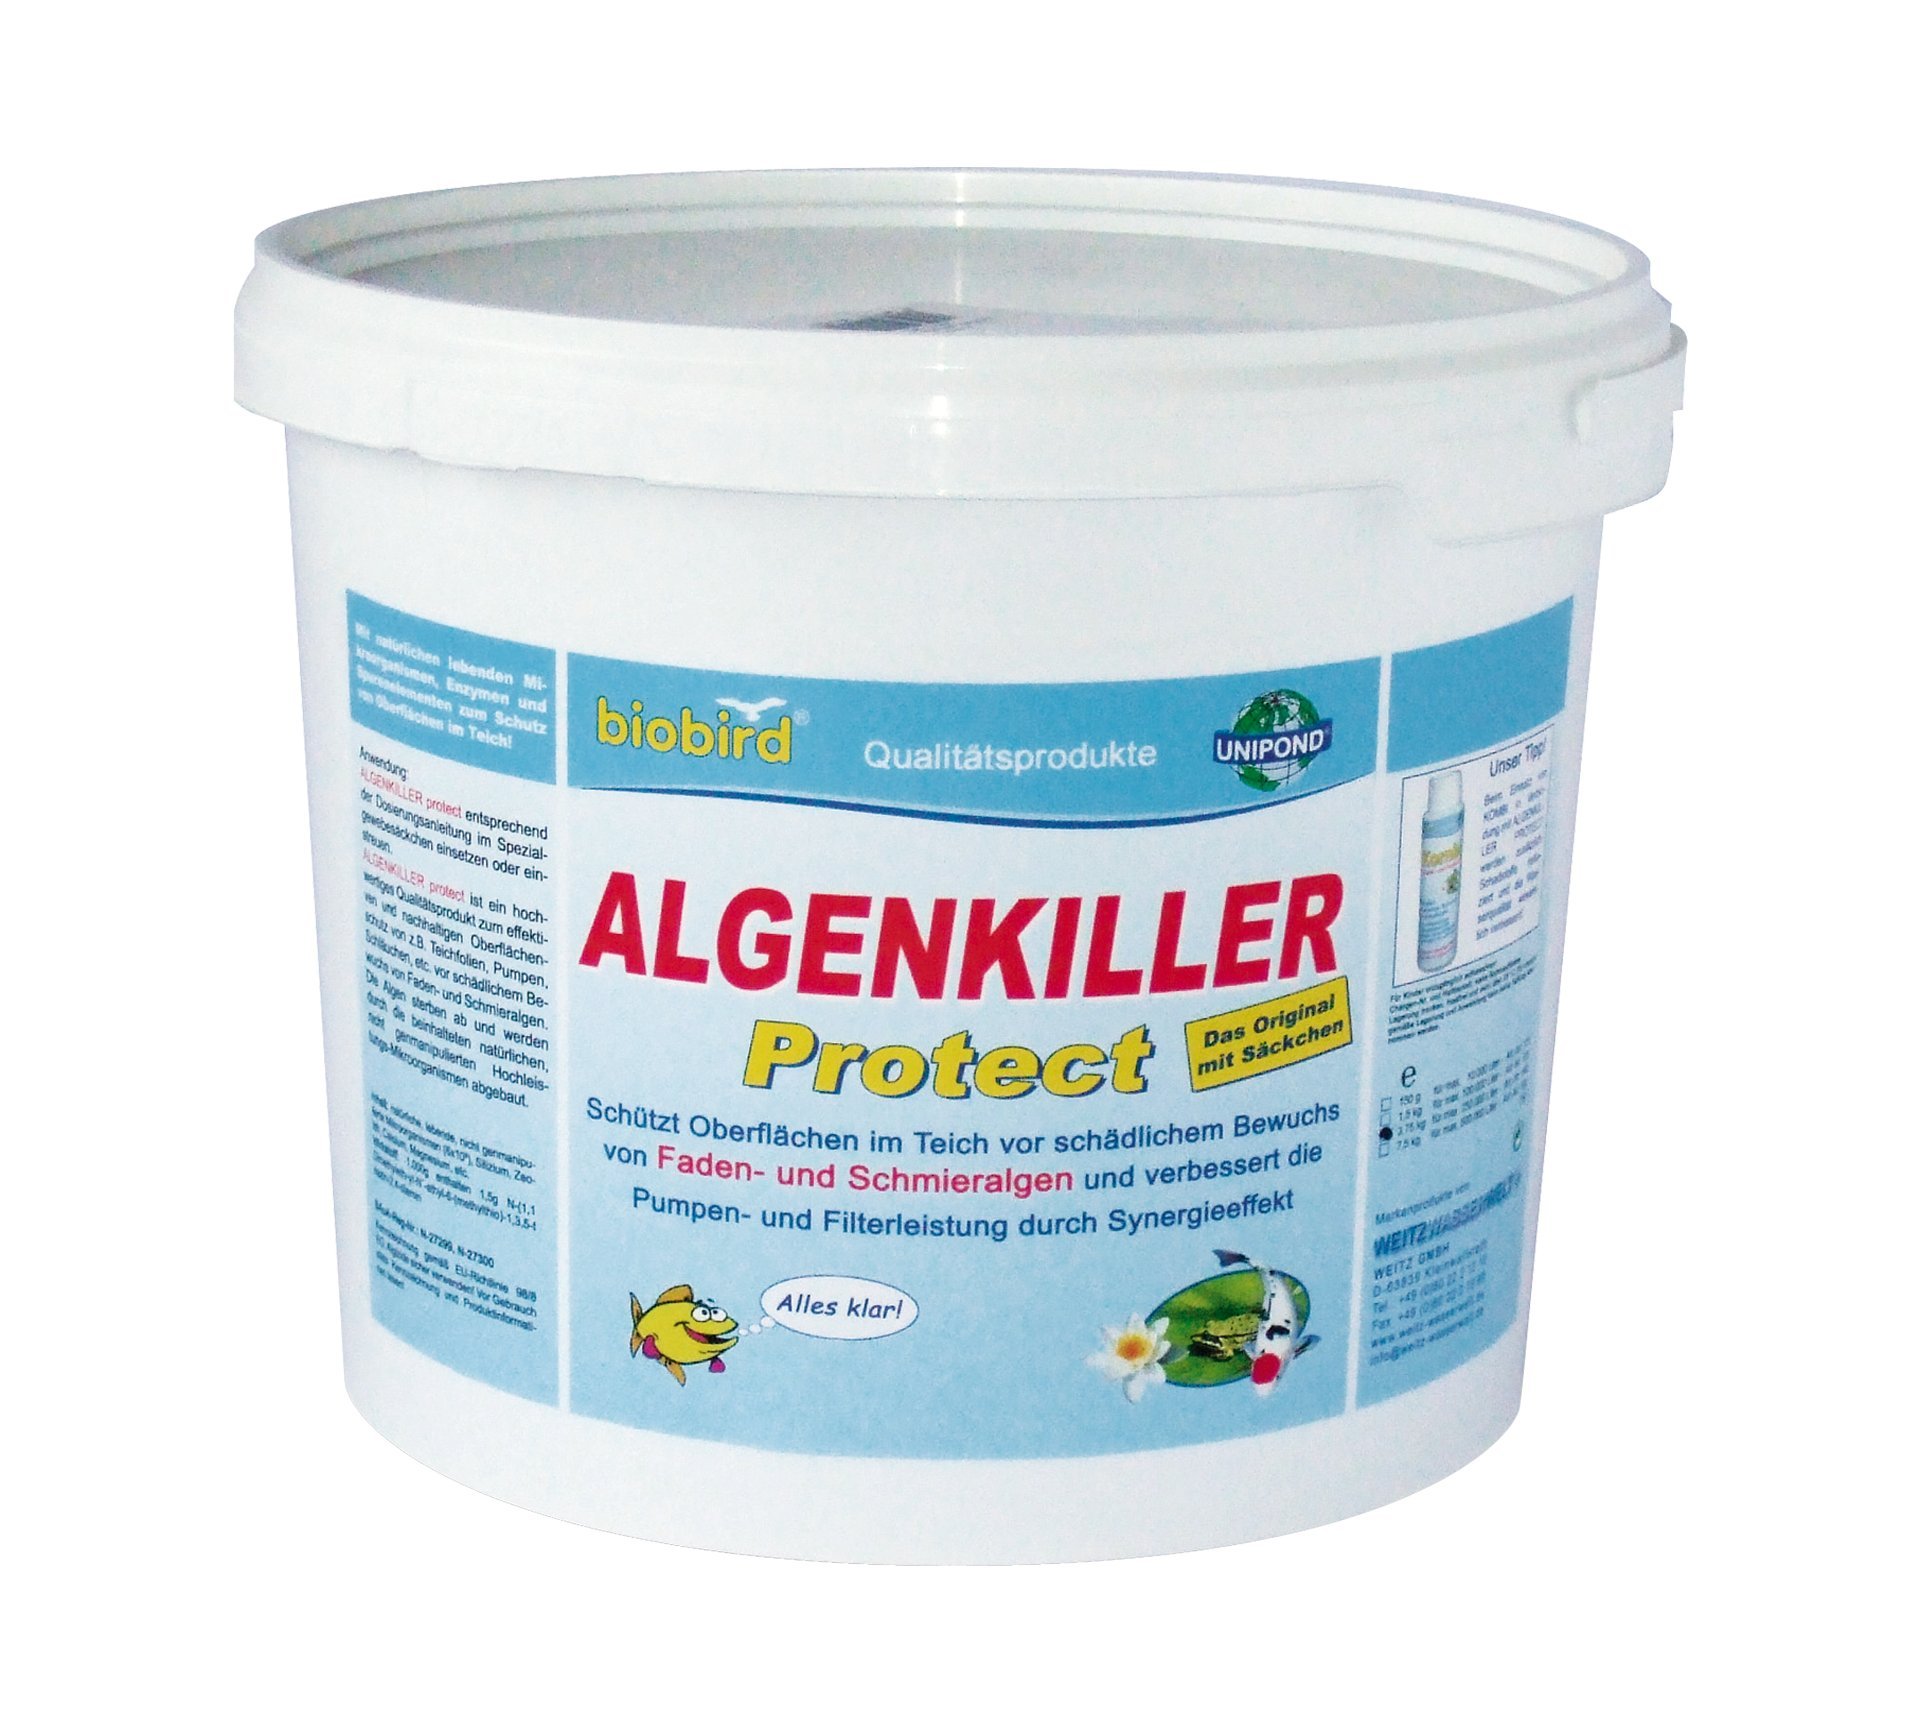 ALGENKILLER Protect® 1,5 kg für 100.000 ltr 